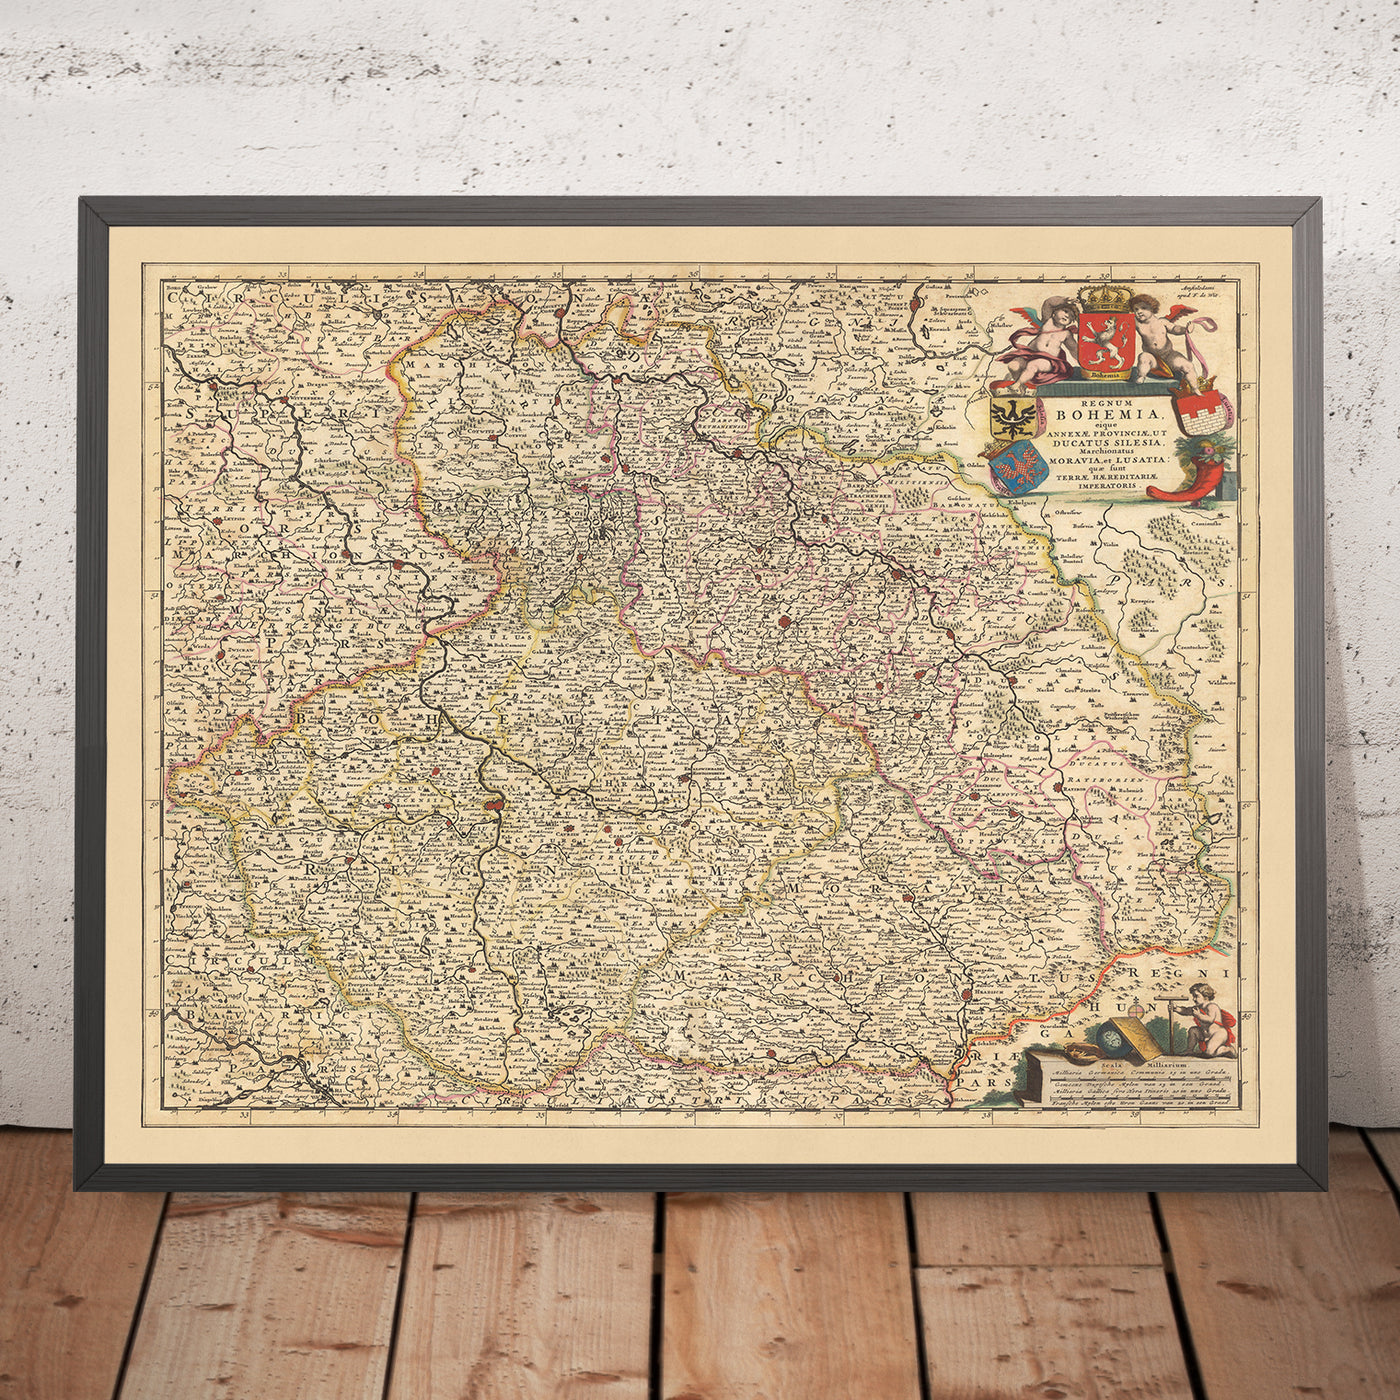 Alte Karte des Königreichs Böhmen von Visscher, 1690: Prag, Brünn, Ostrava, Breslau, Posen